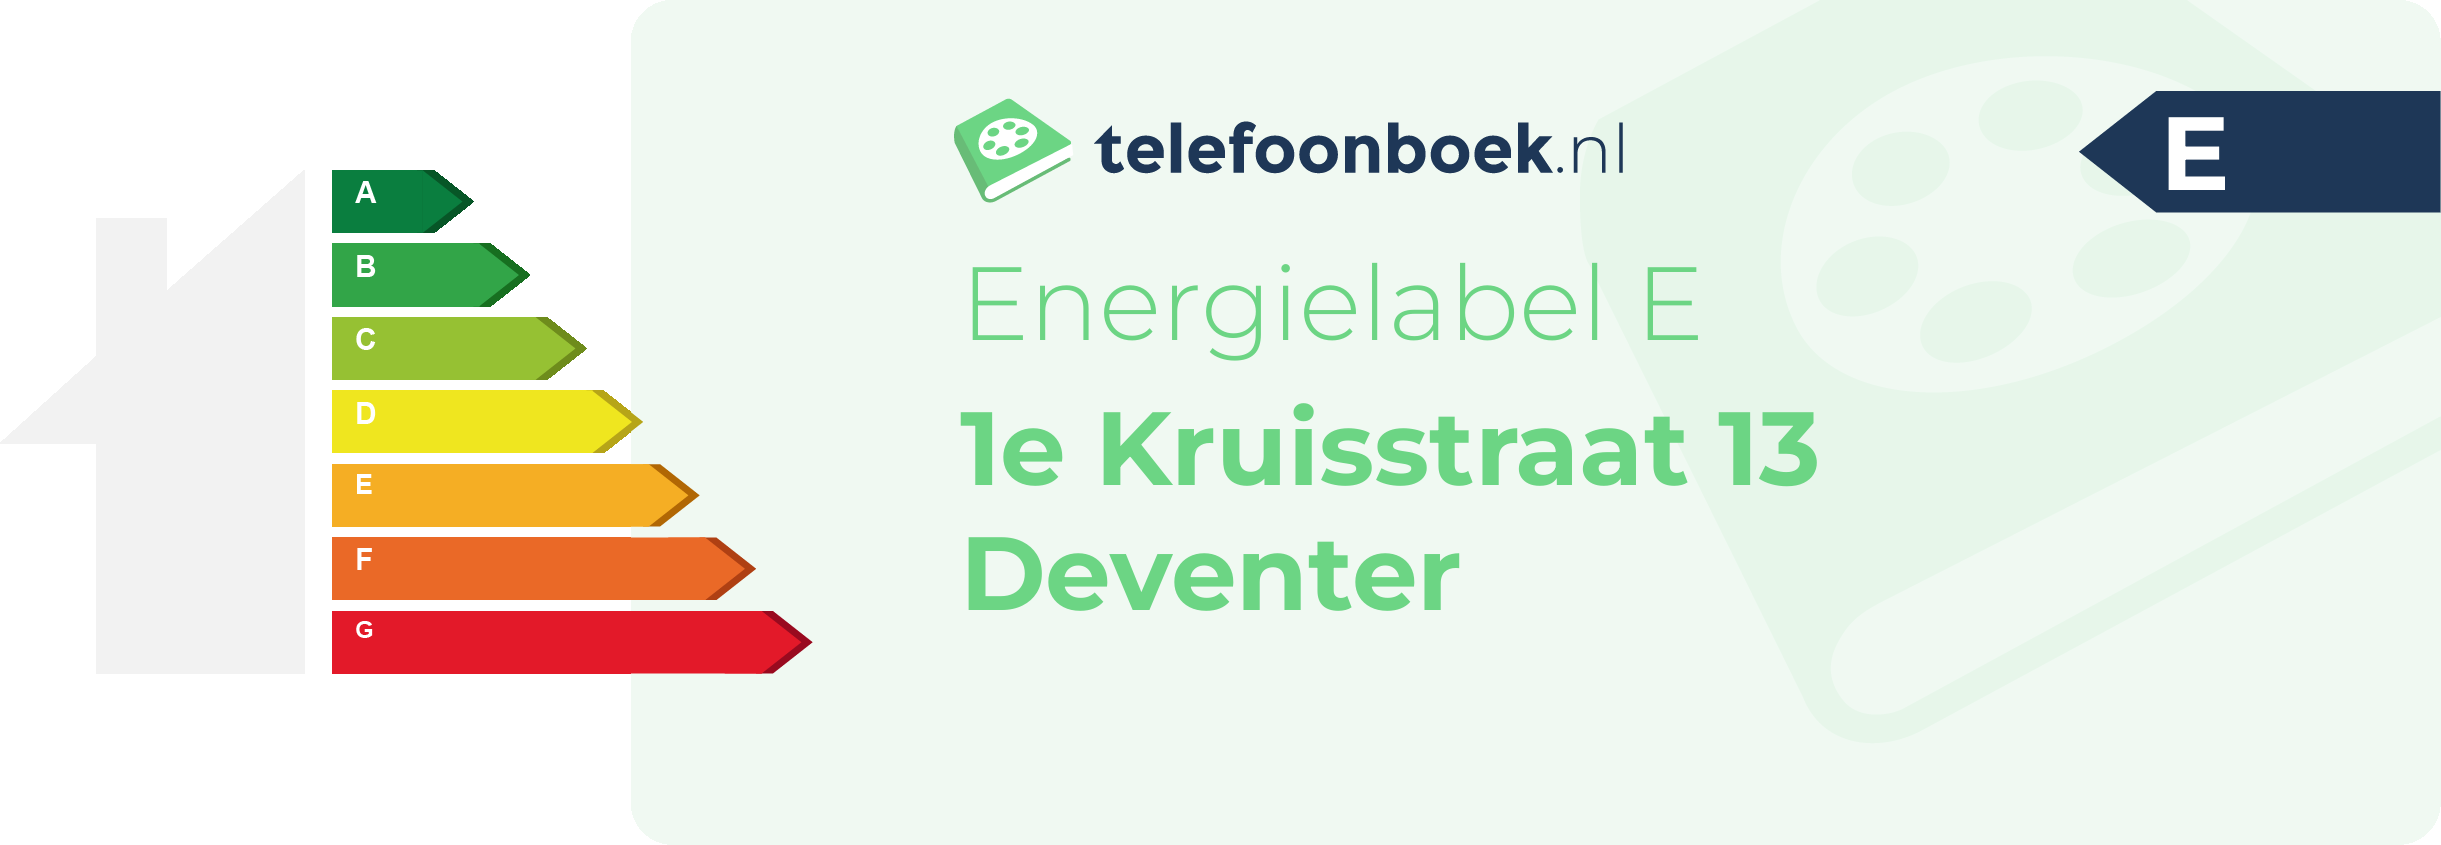 Energielabel 1e Kruisstraat 13 Deventer